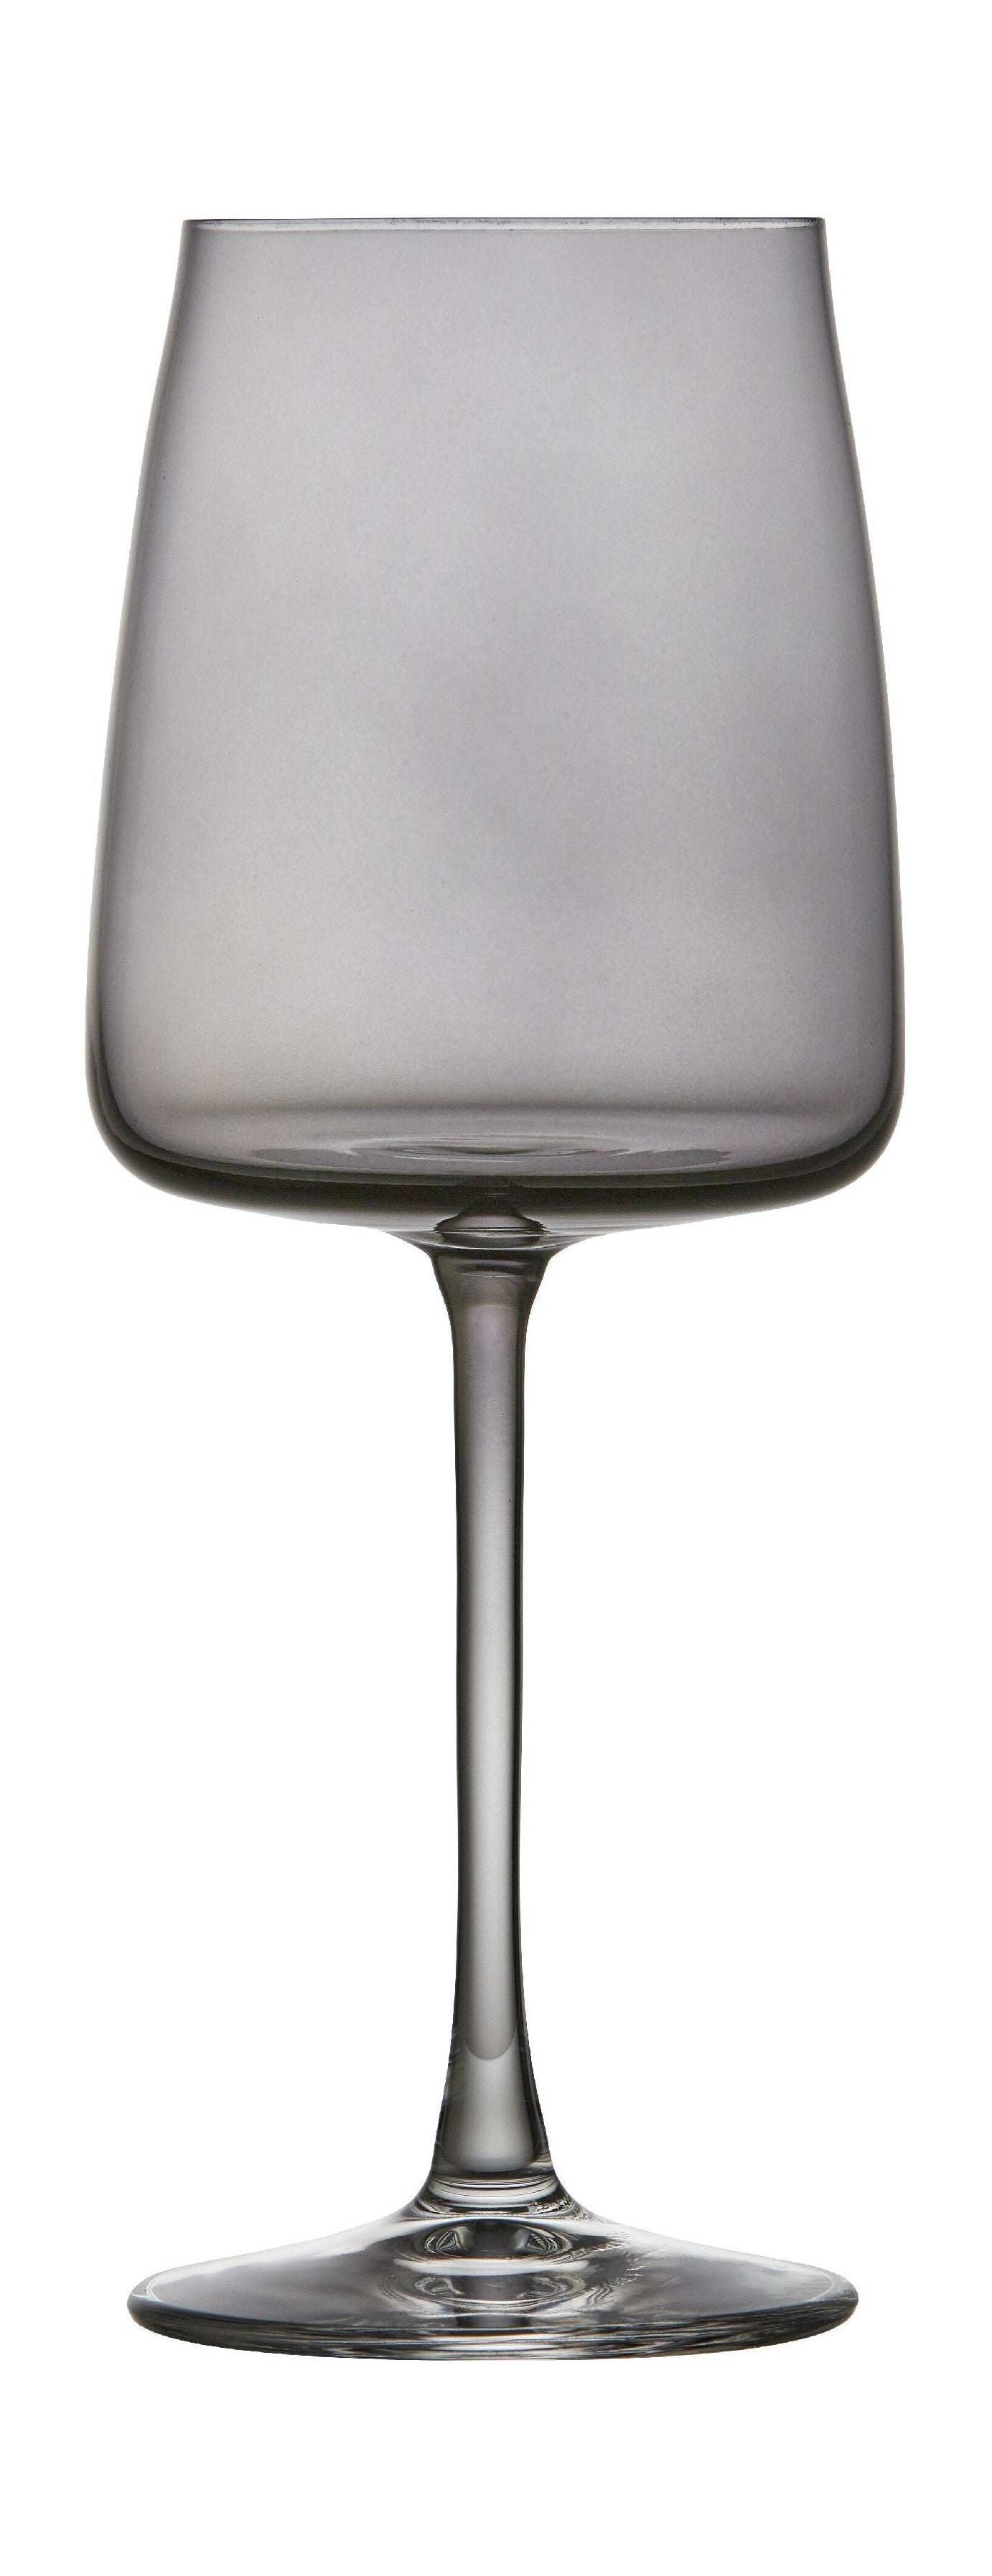 Lyngby Glas Krystal Zero White Wine Glass 43 Cl 4 Pcs, Smoke